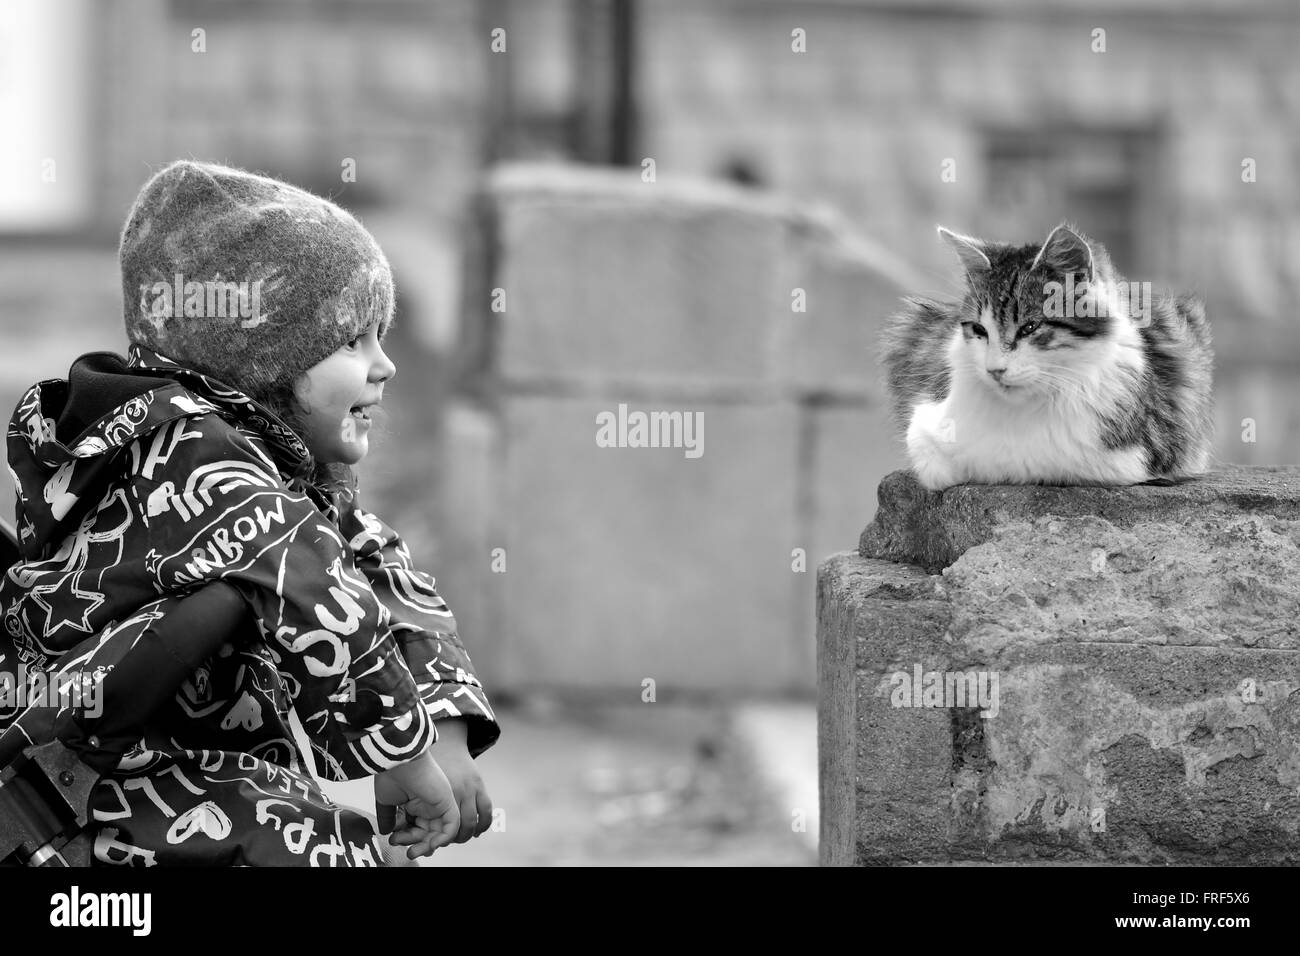 Giovane ragazza in passeggino con gatto randagio a Baku, capitale dell'Azerbaigian. Immagine in bianco e nero che mostrano affetto da ragazza per neonati Foto Stock